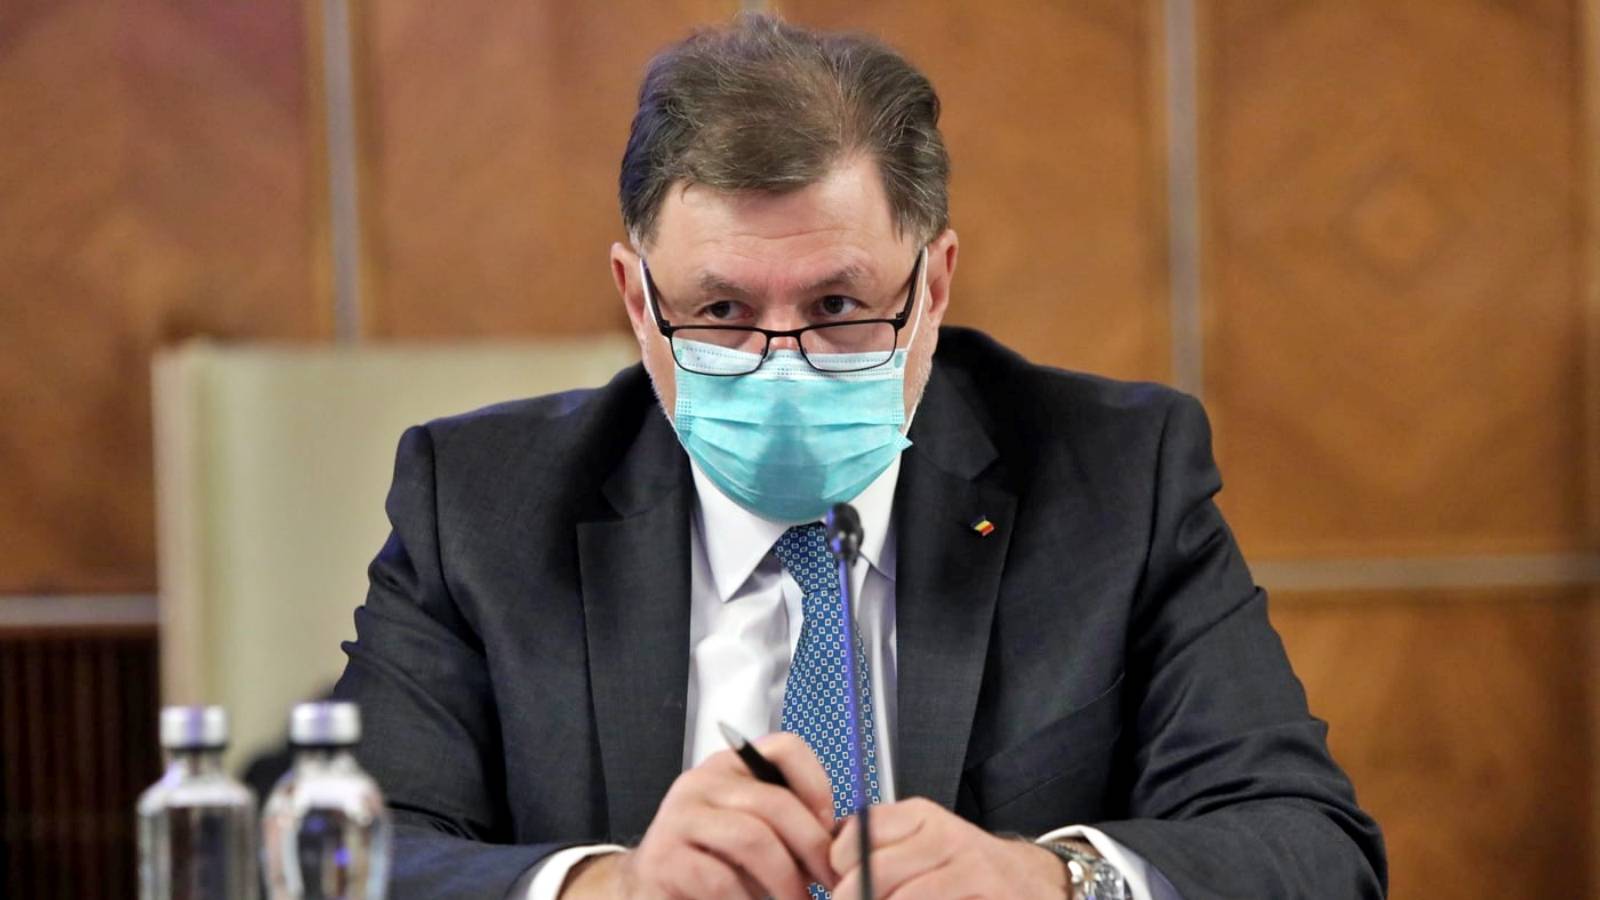 Avertissement de dernière heure du ministre de la Santé envoyé aux Roumains